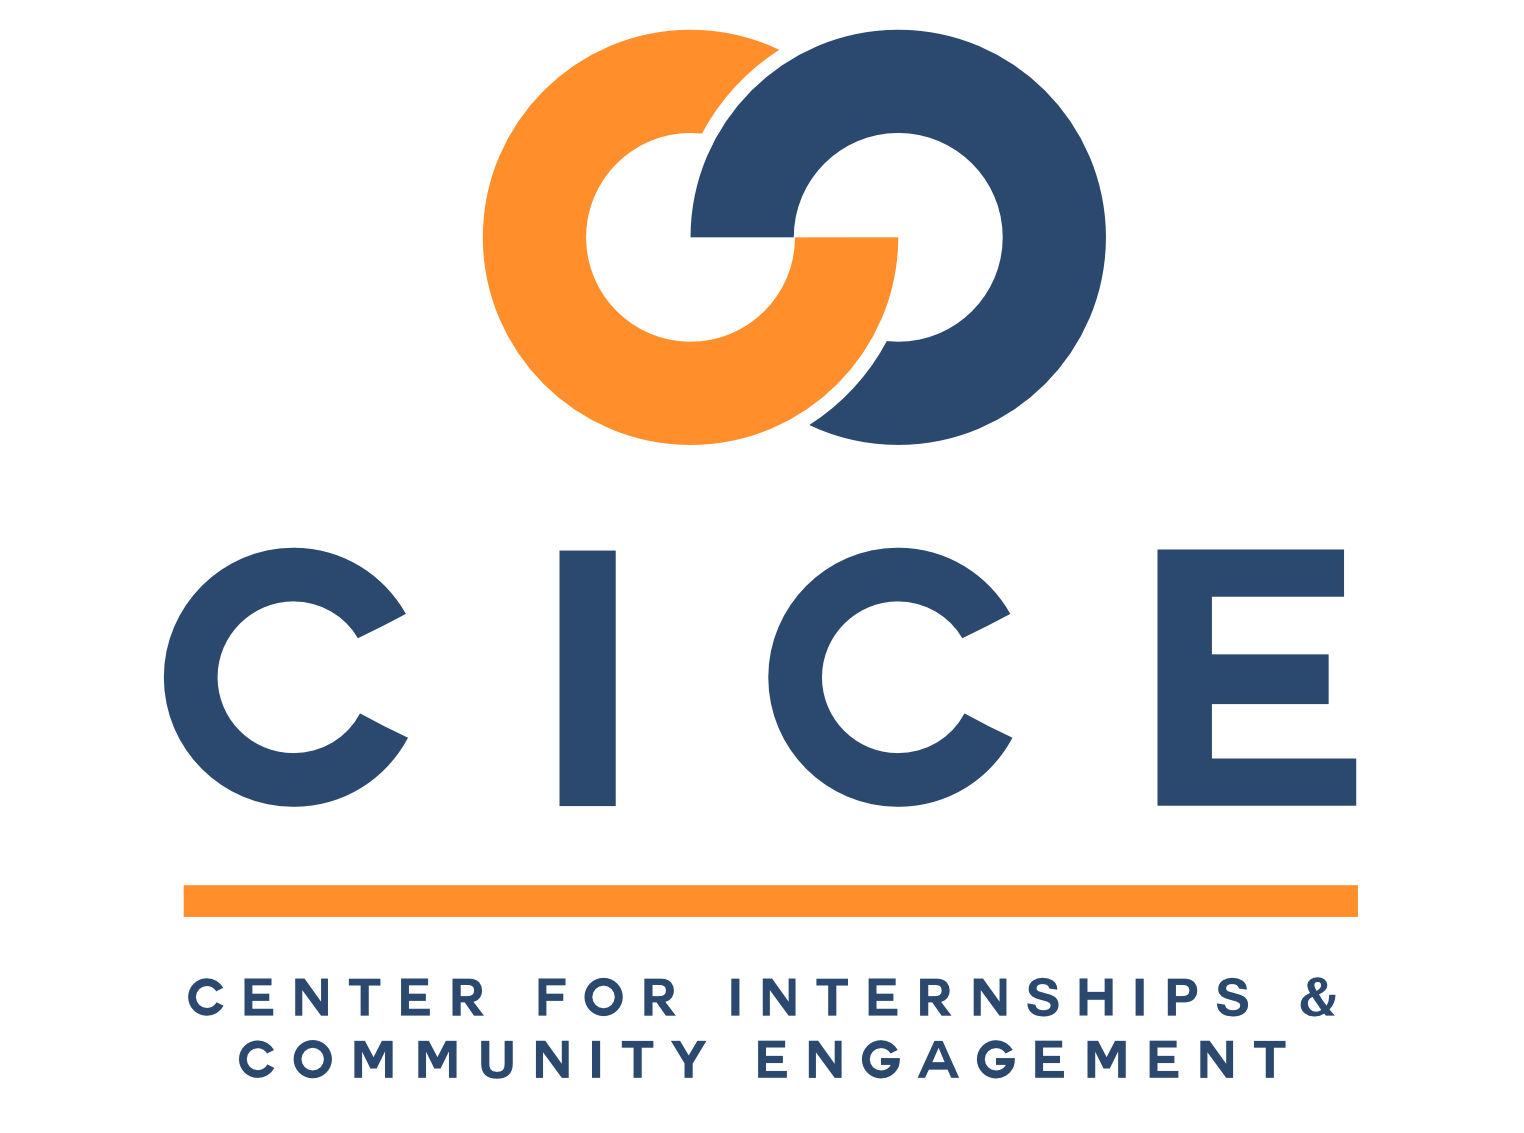 Center for Internships & Community Engagement